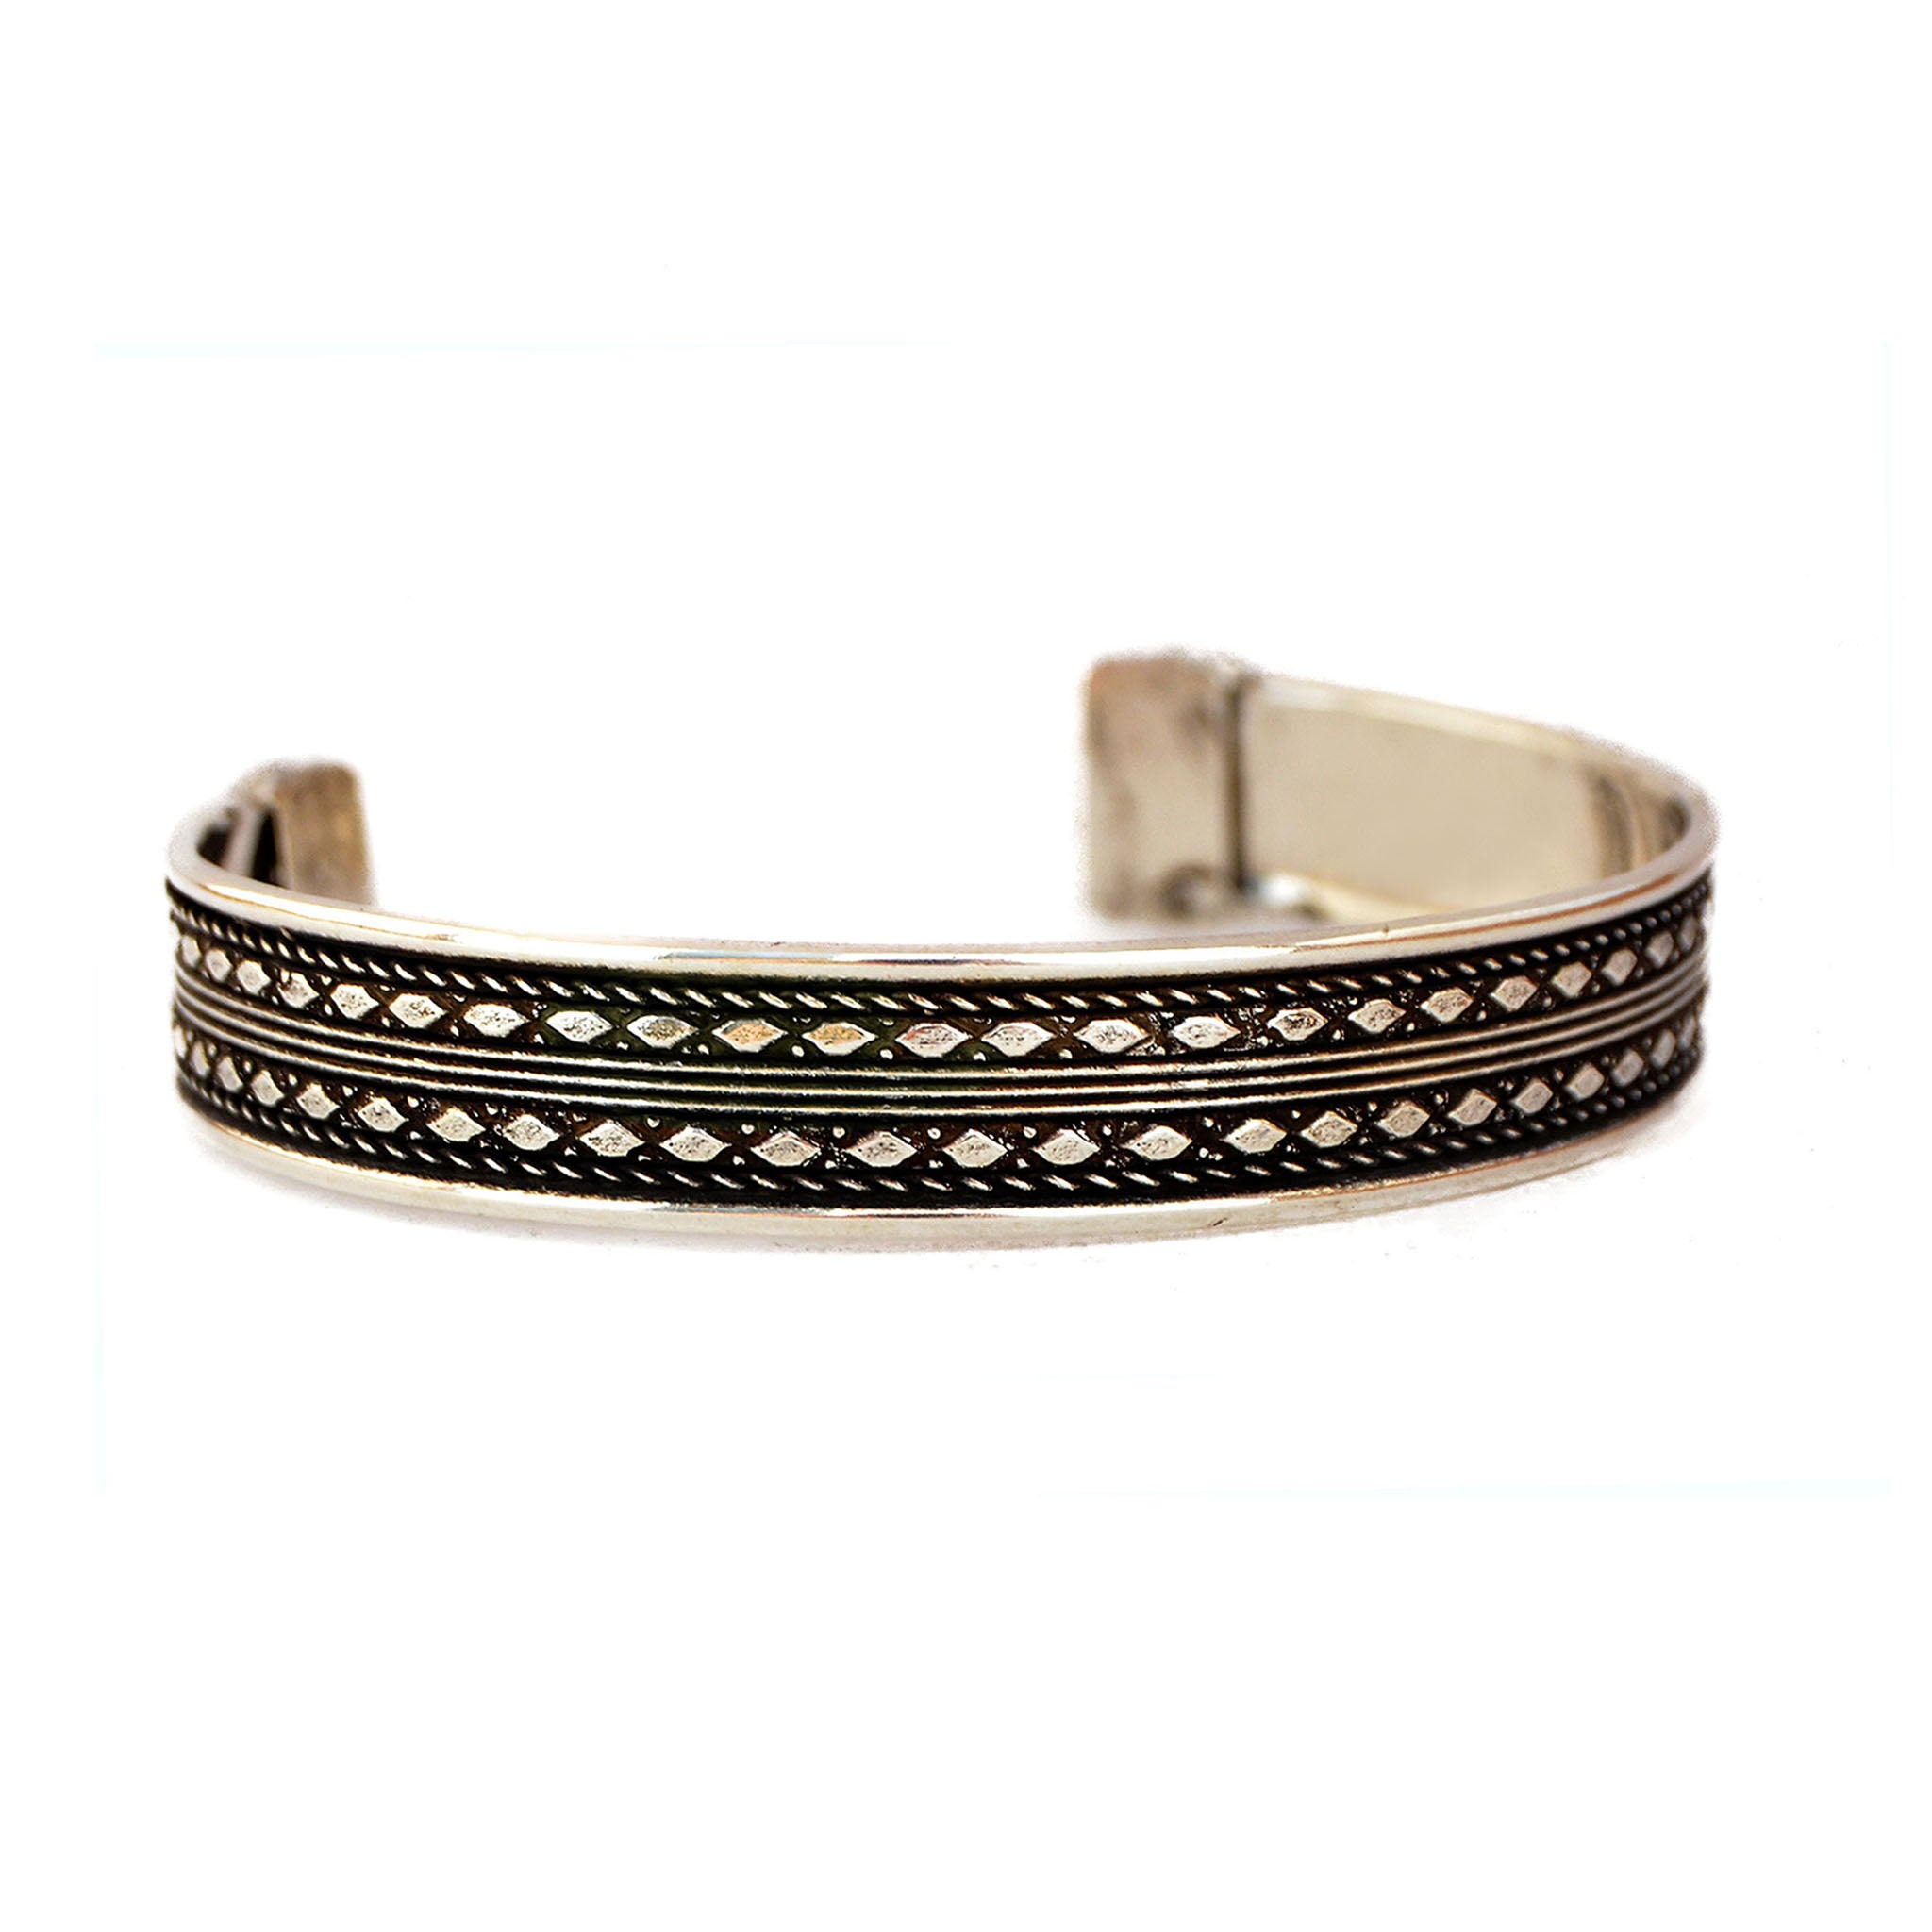 Indian cuff bracelet